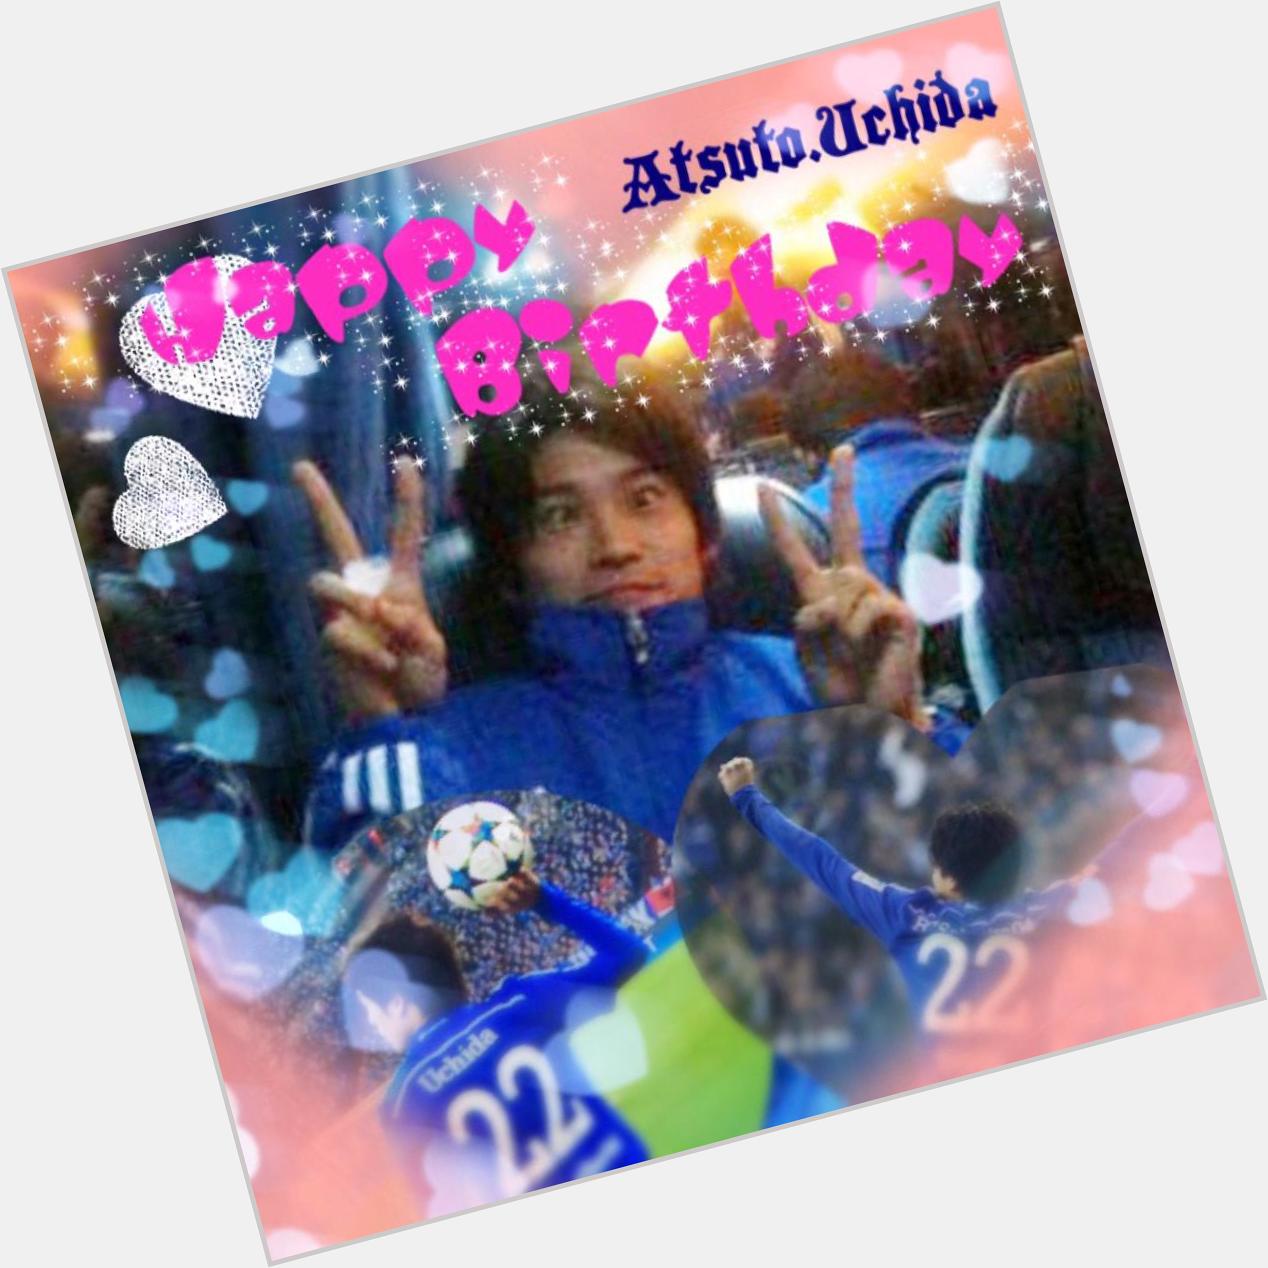  Happy Birthday
Atsuto.Uchida
2015.03.27

Schalke04         22                     